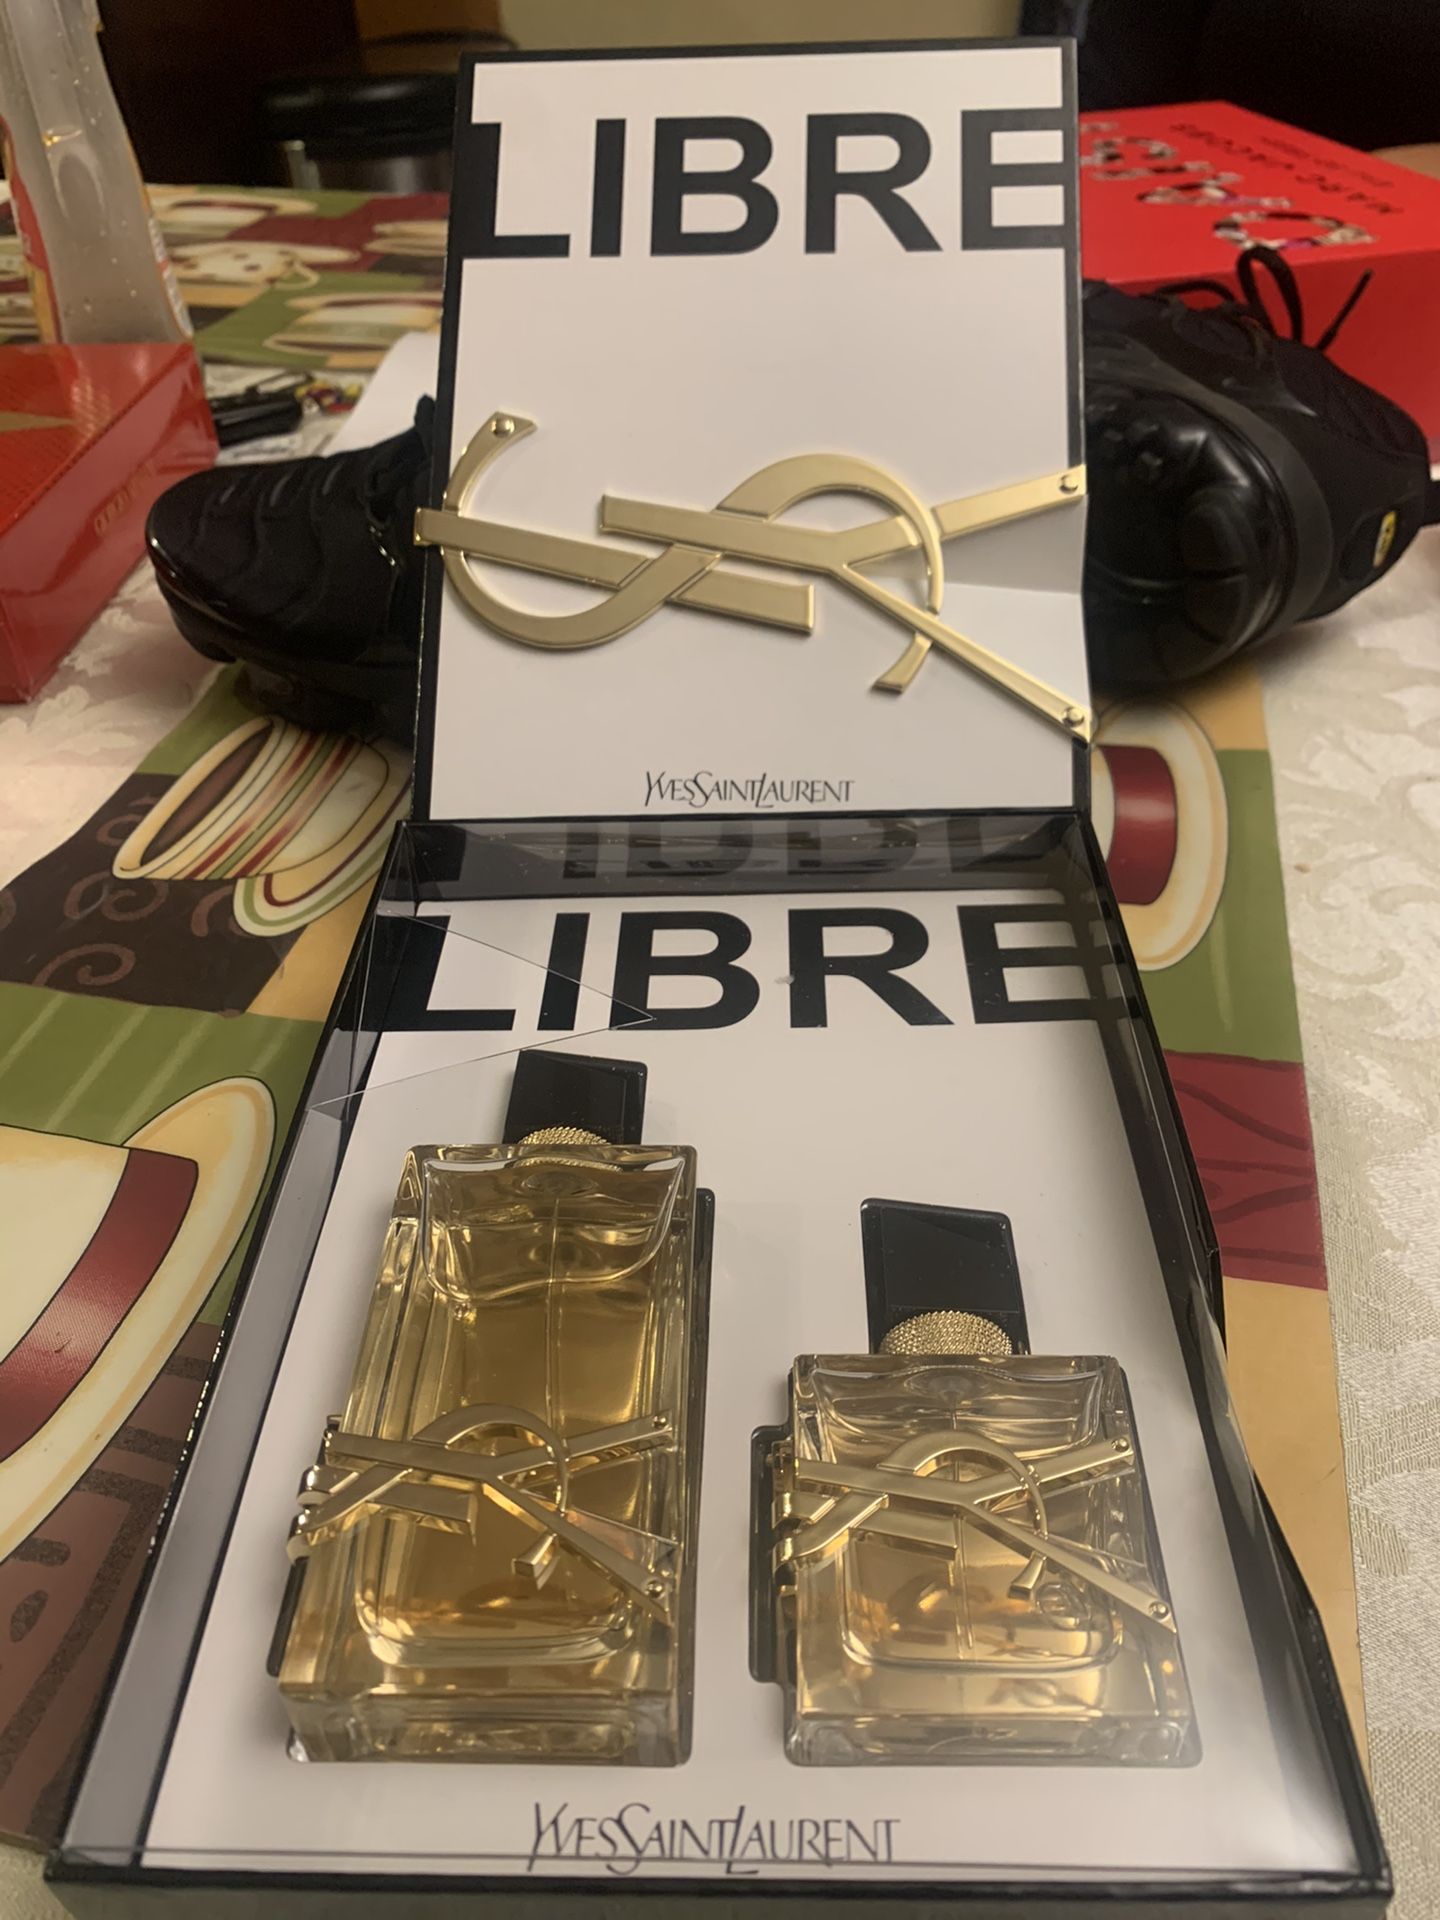 Saint Laurent Libre woman’s perfume